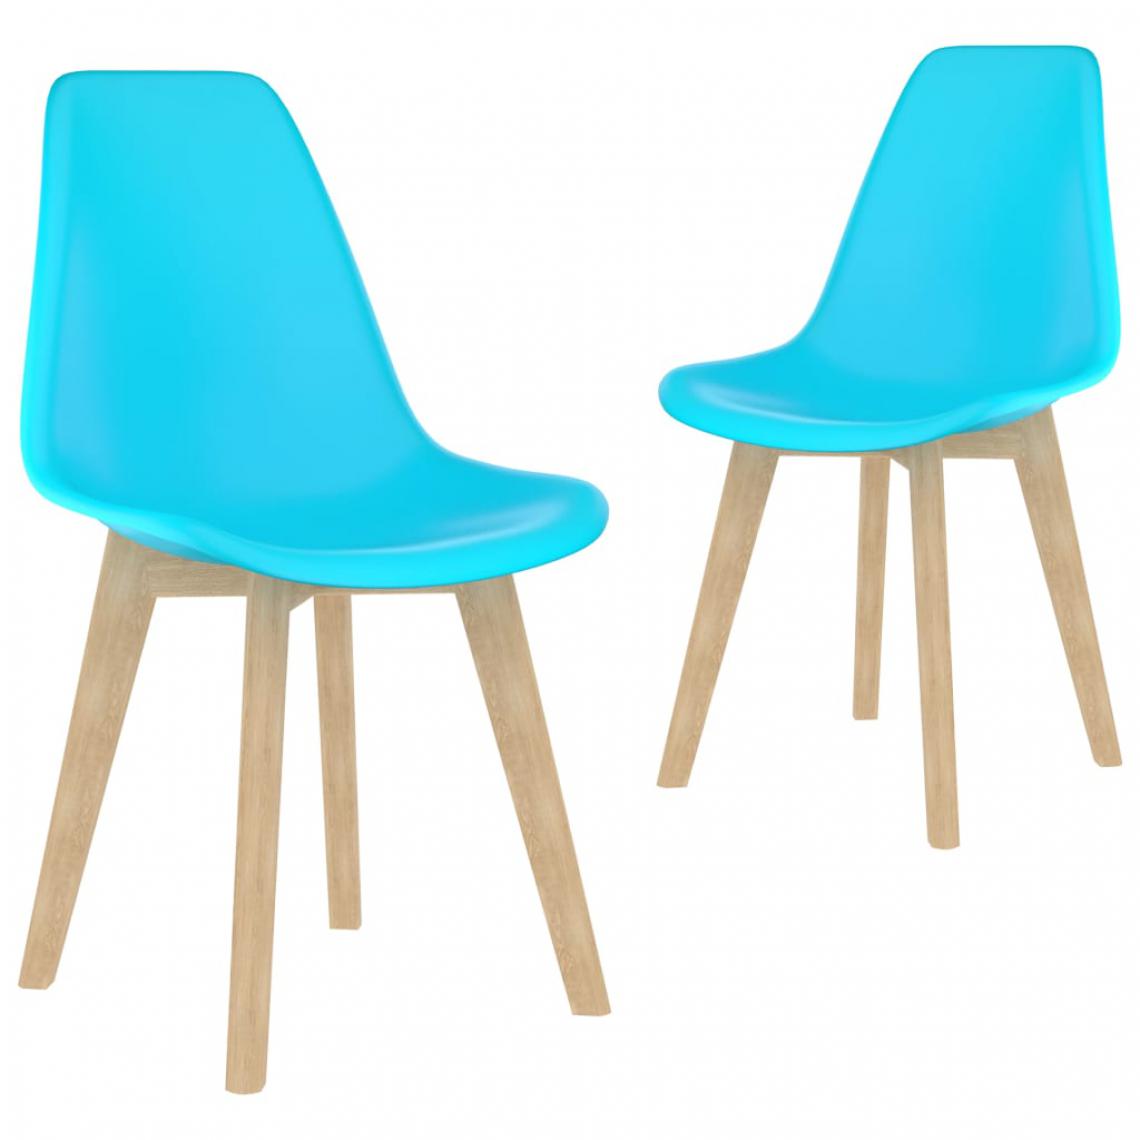 Icaverne - Stylé Fauteuils et chaises serie Harare Chaises de salle à manger 2 pcs Bleu Plastique - Chaises